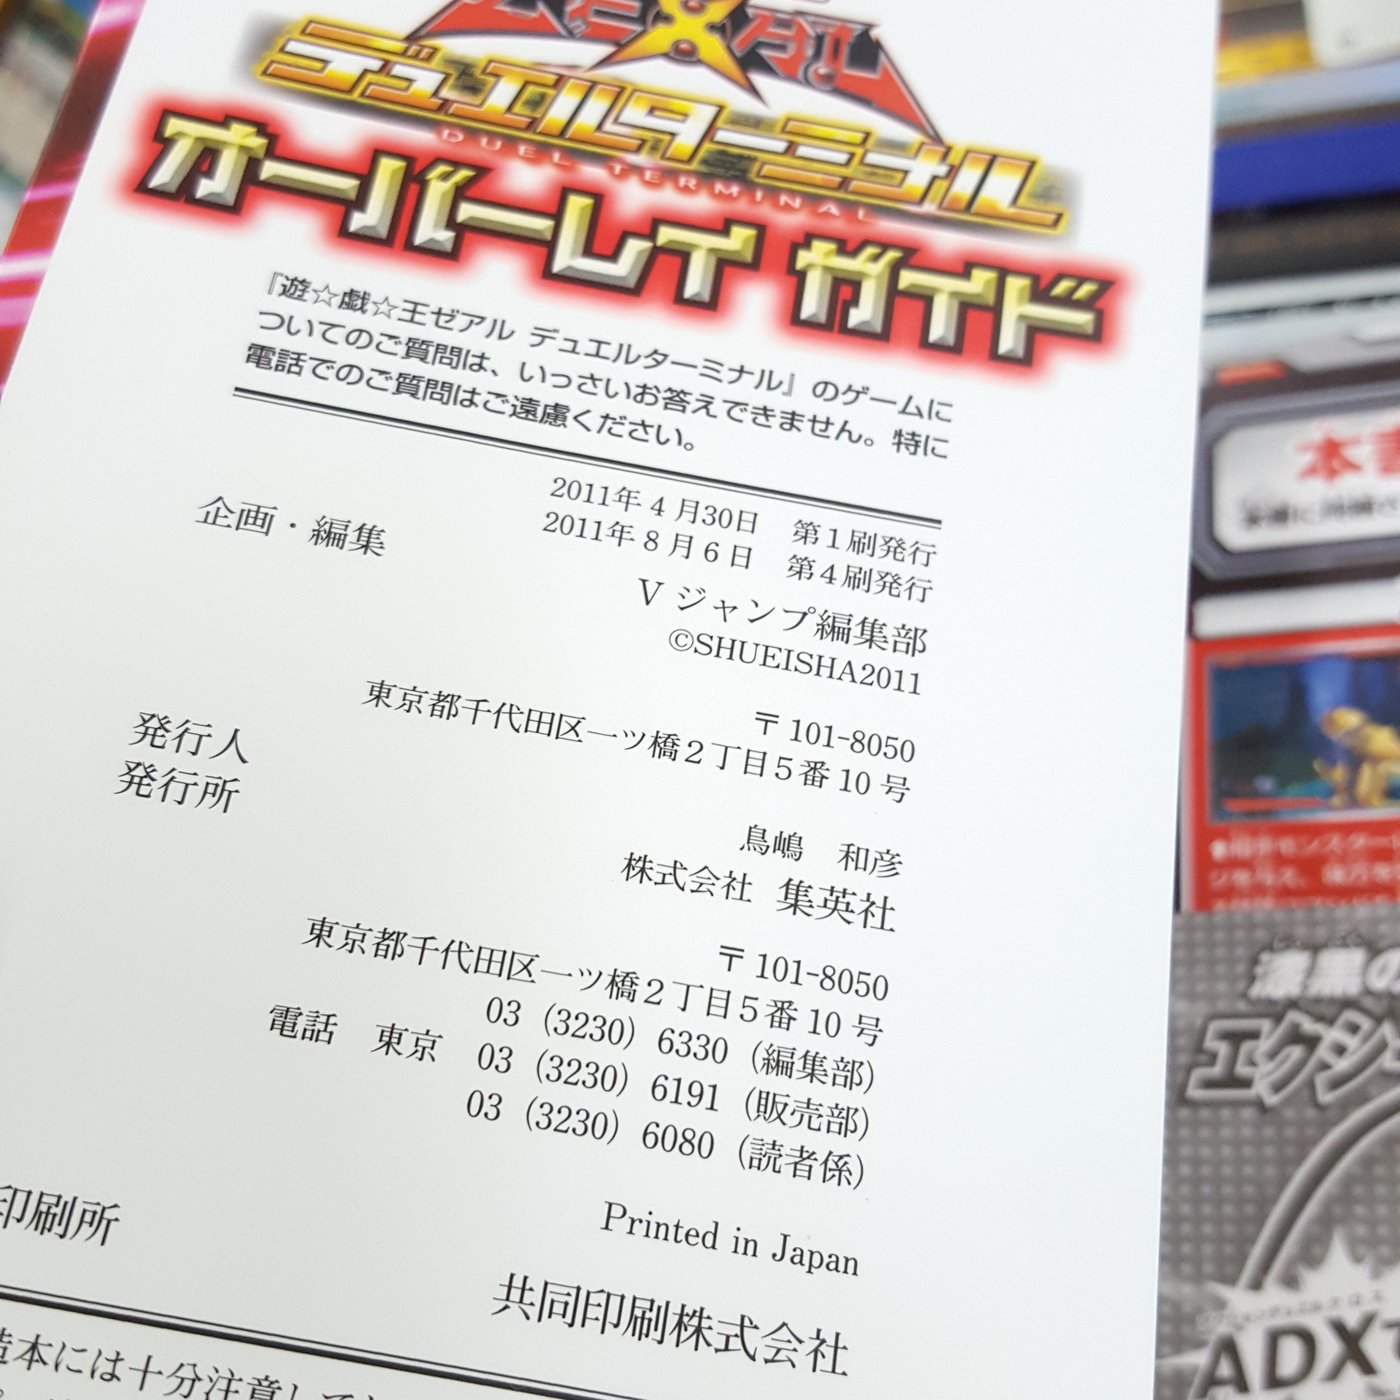 復興二手書店 遊戲王zexal 決鬥終端機徹底攻略指南 集英社出版 Konami公式攻略本 無章釘原版書免運費 Yahoo奇摩拍賣